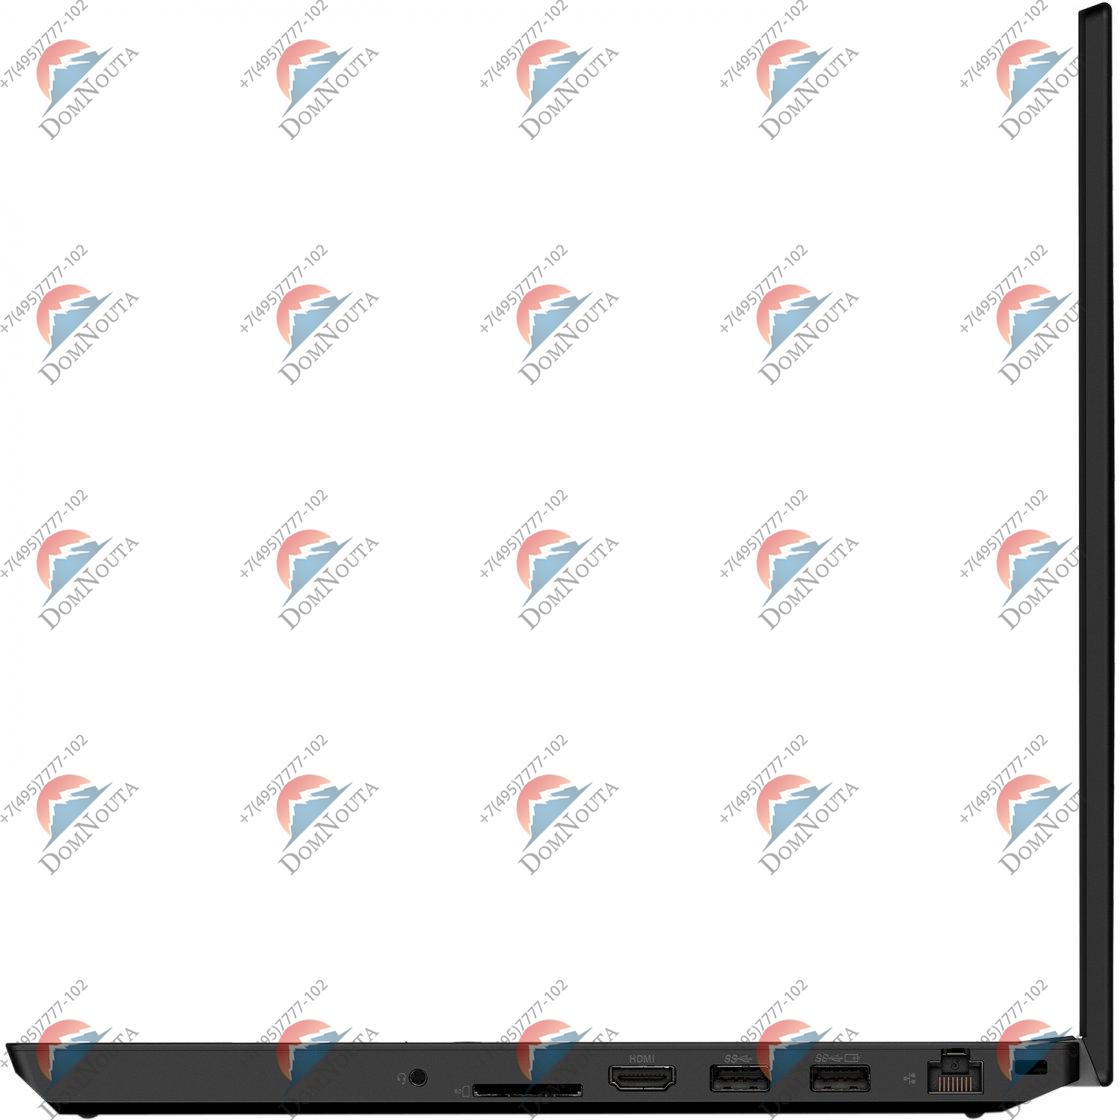 Ноутбук Lenovo ThinkPad T15p G1